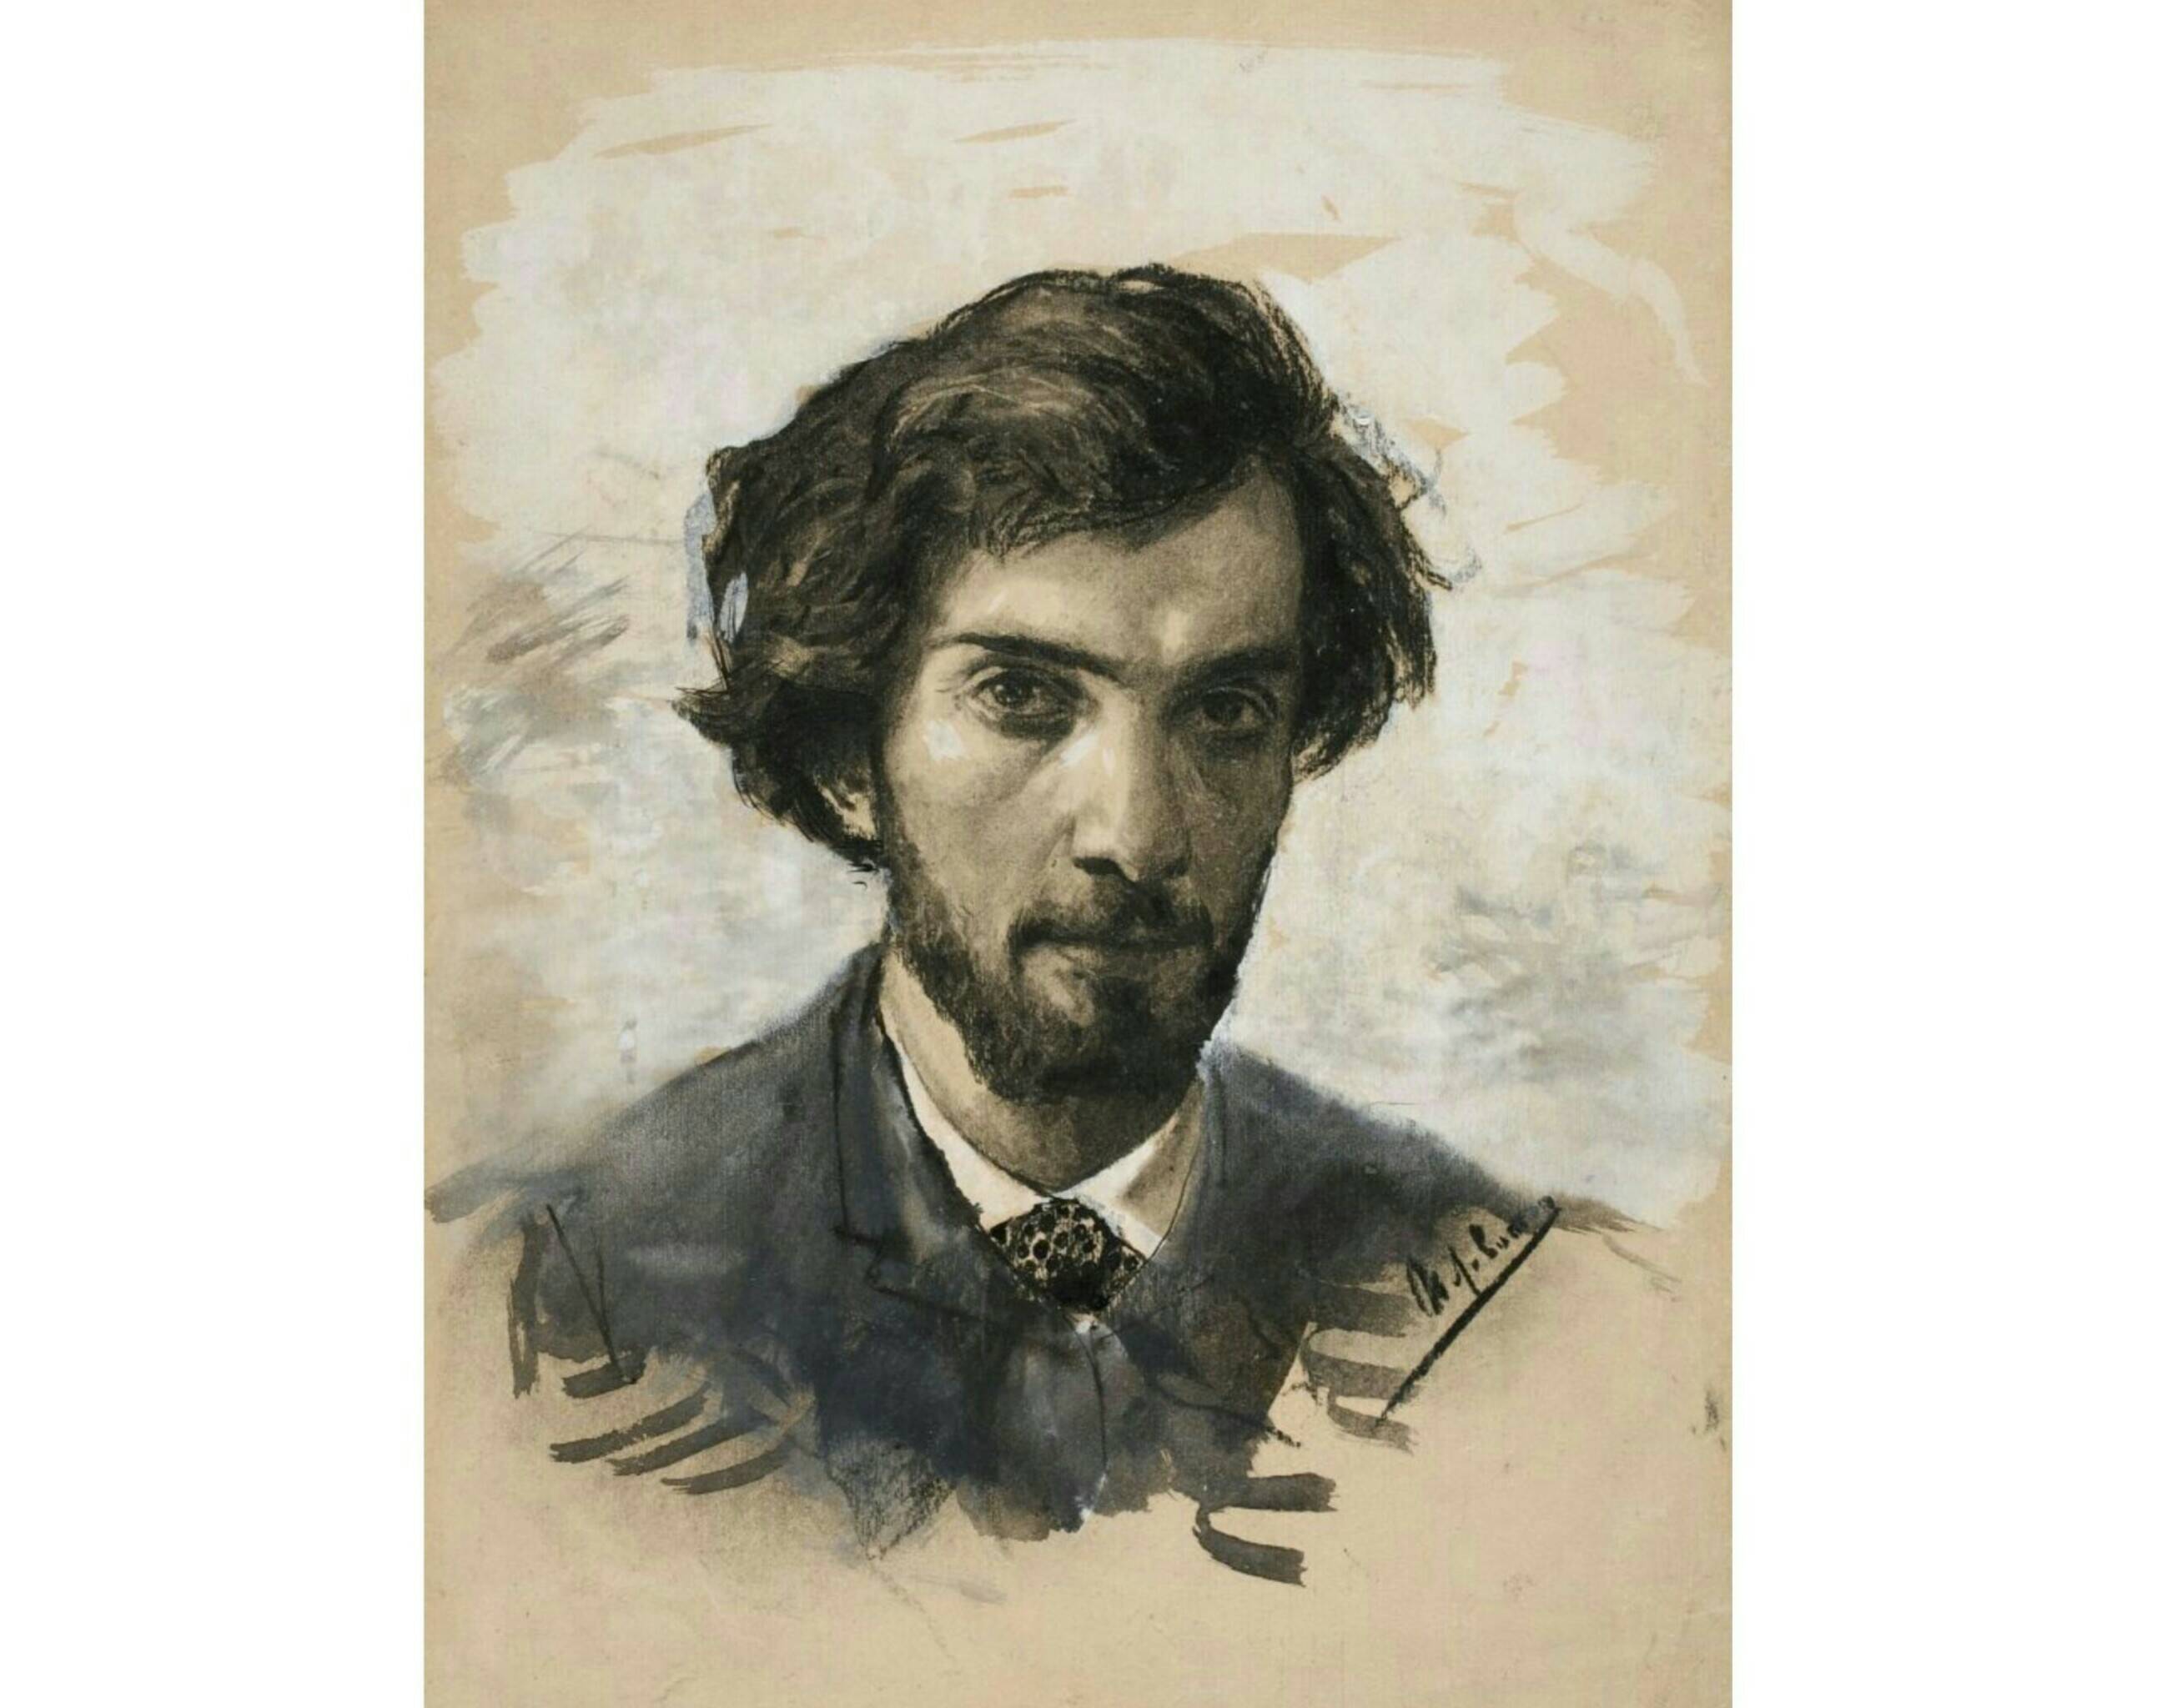 И.И. Левитан. Автопортрет, первая половина 1880-х гг. Из собрания Третьяковской галереи